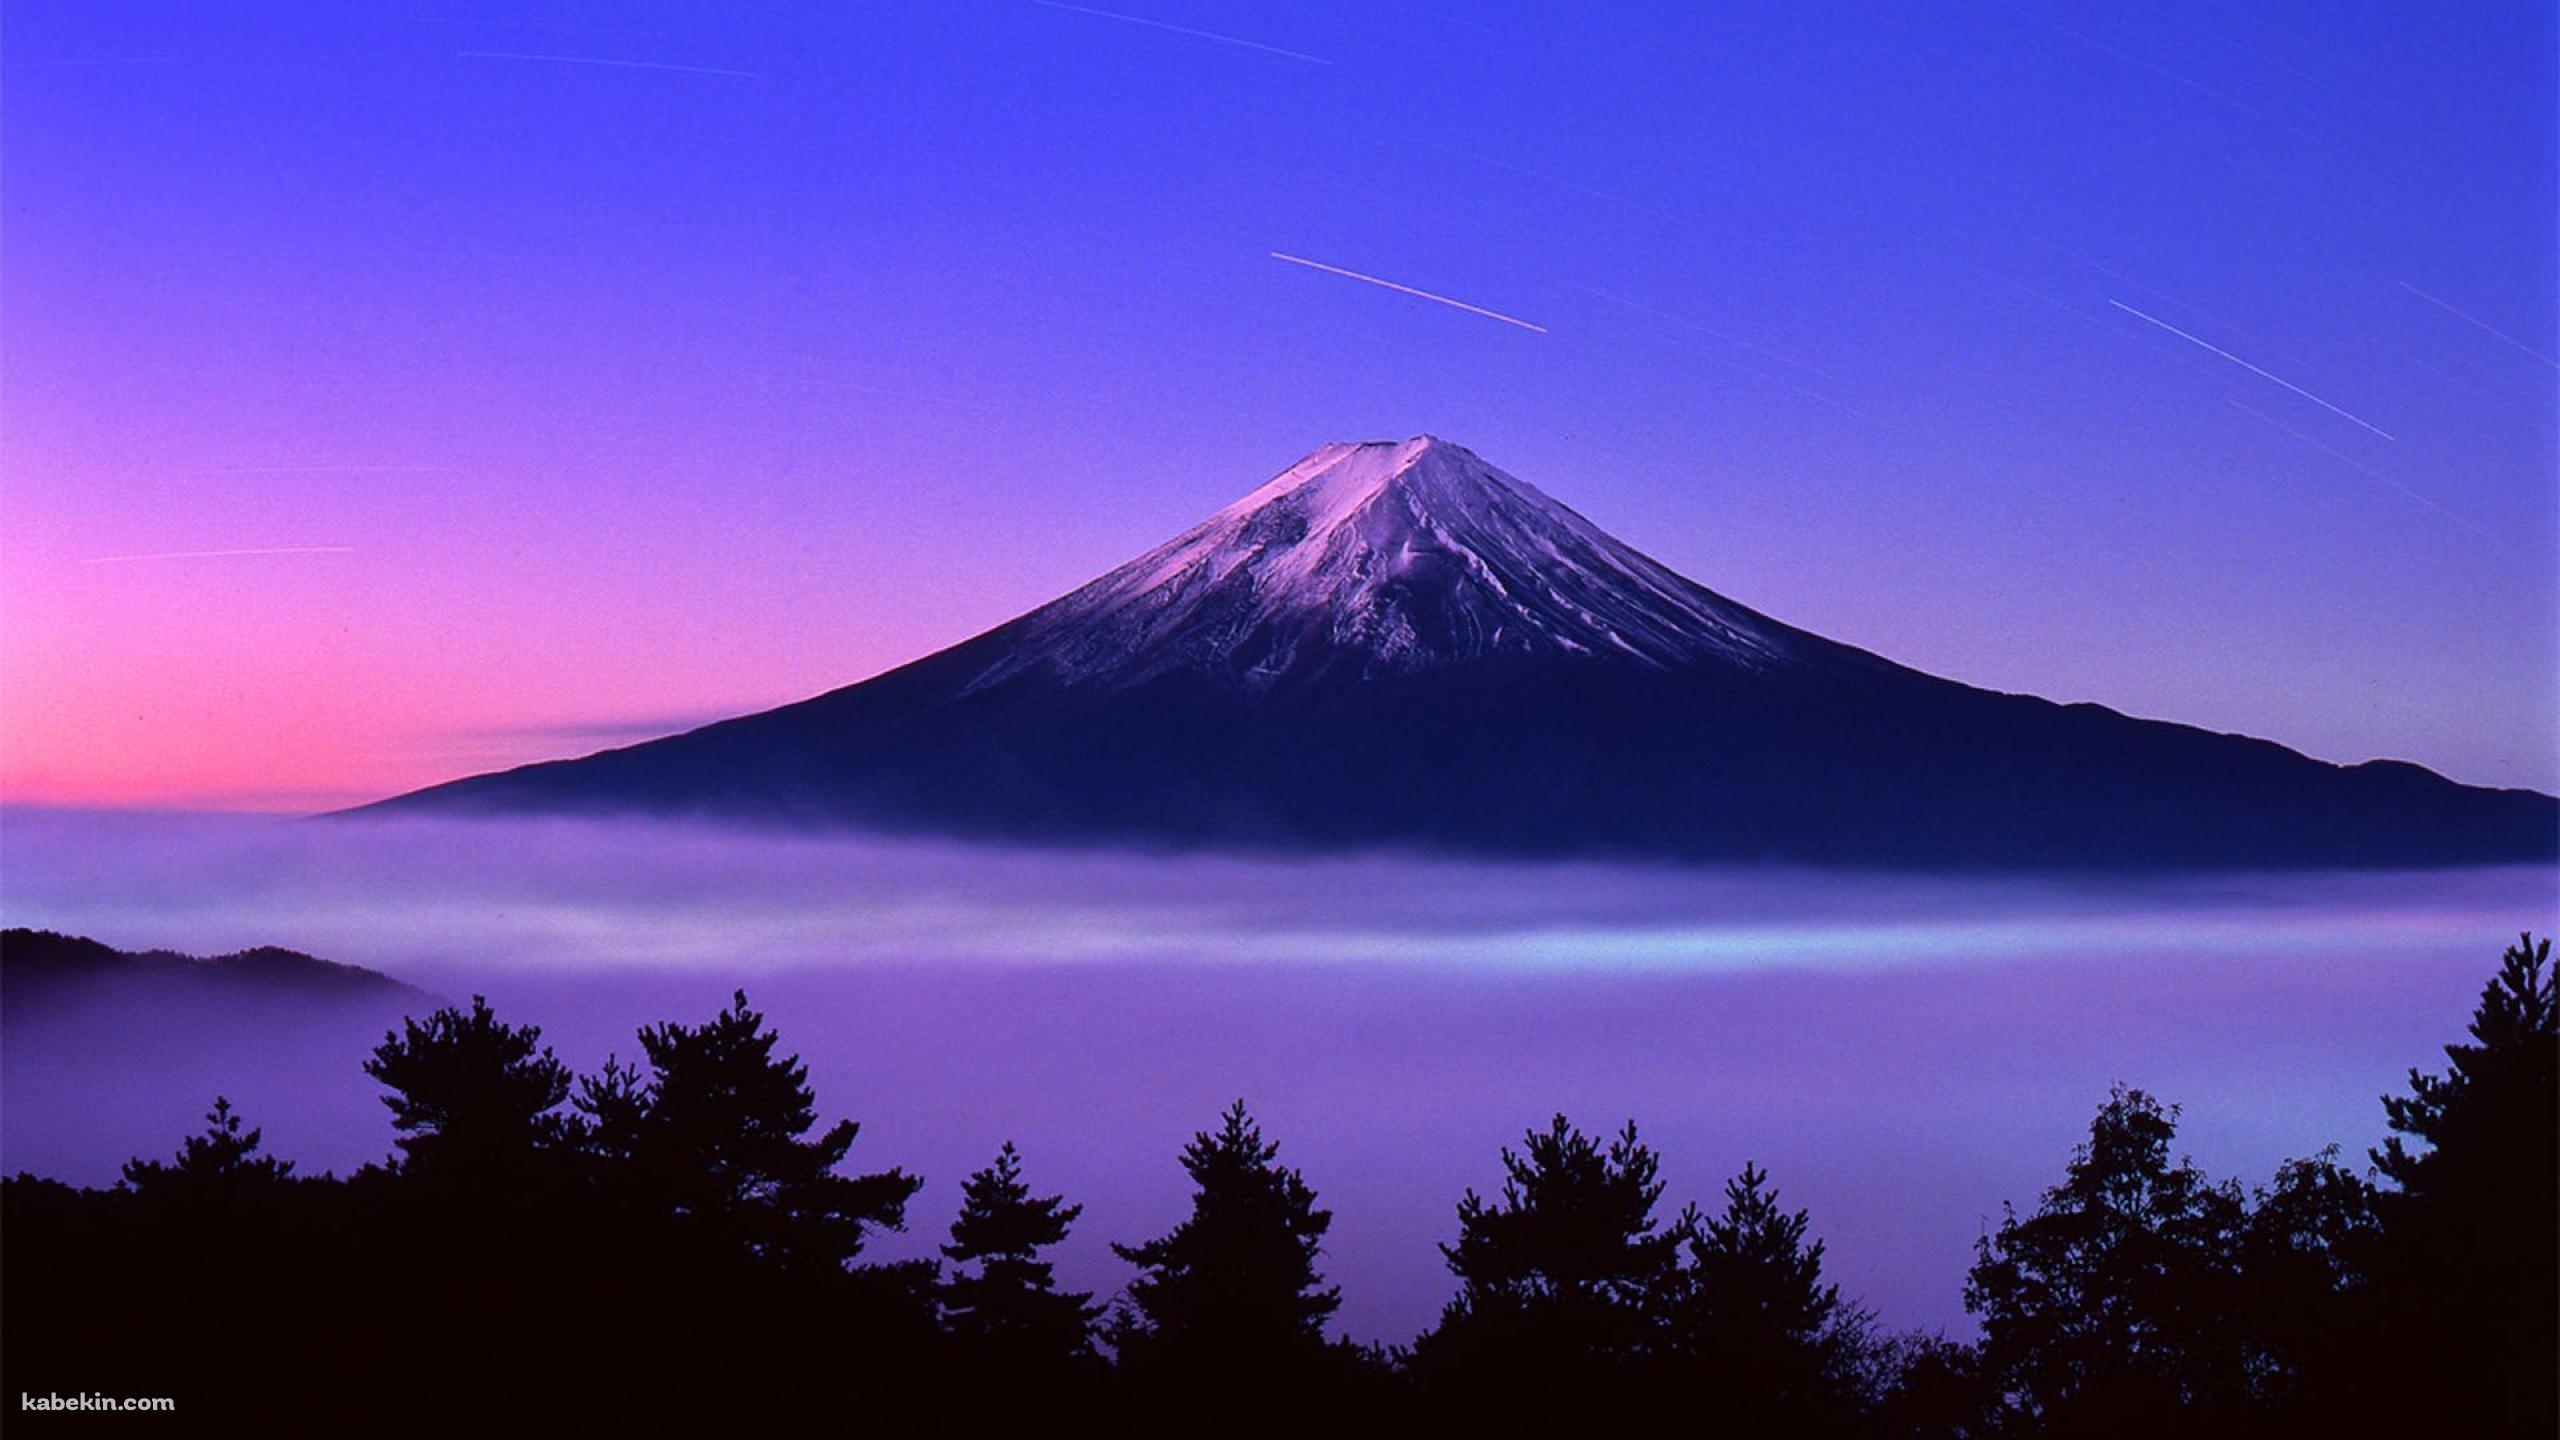 富士山と流れ星の壁紙(2560px x 1440px) 高画質 PC・デスクトップ用